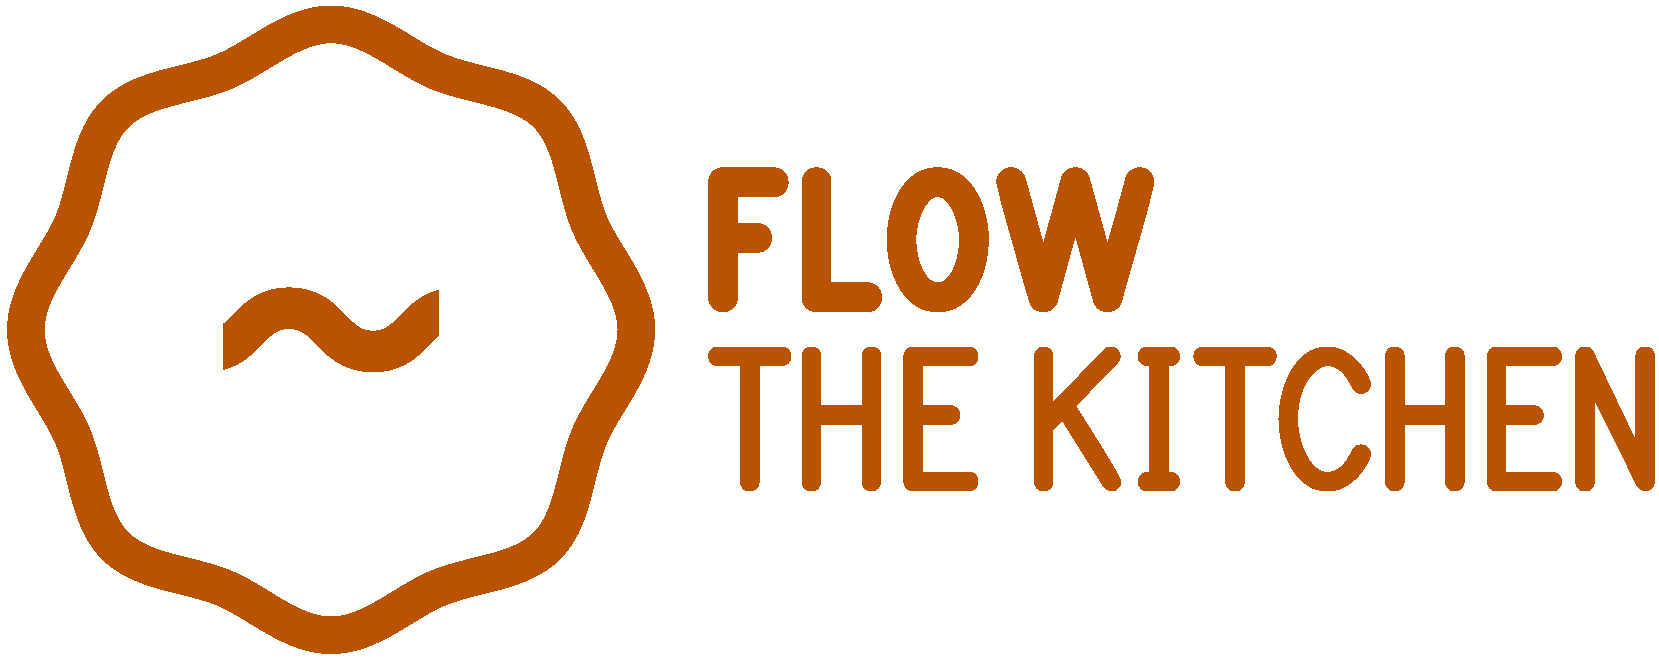 FLOW THE KITCHEN